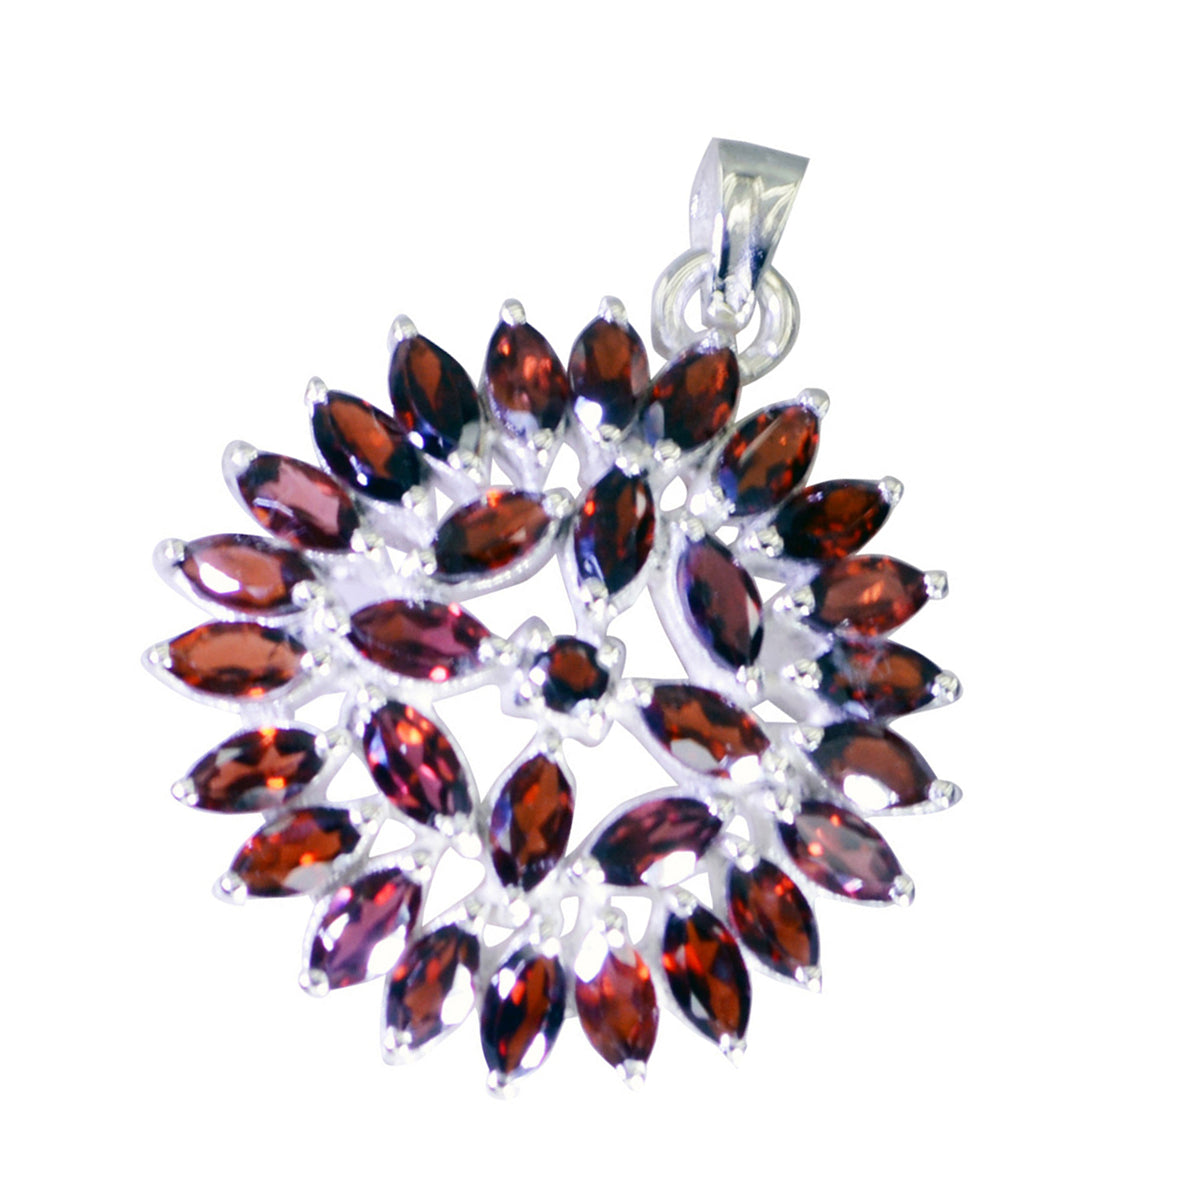 Riyo Prepossessing Gemstone Multi Faceted Red Garnet 1033 Sterling Silver Pendant Gift For Birthday